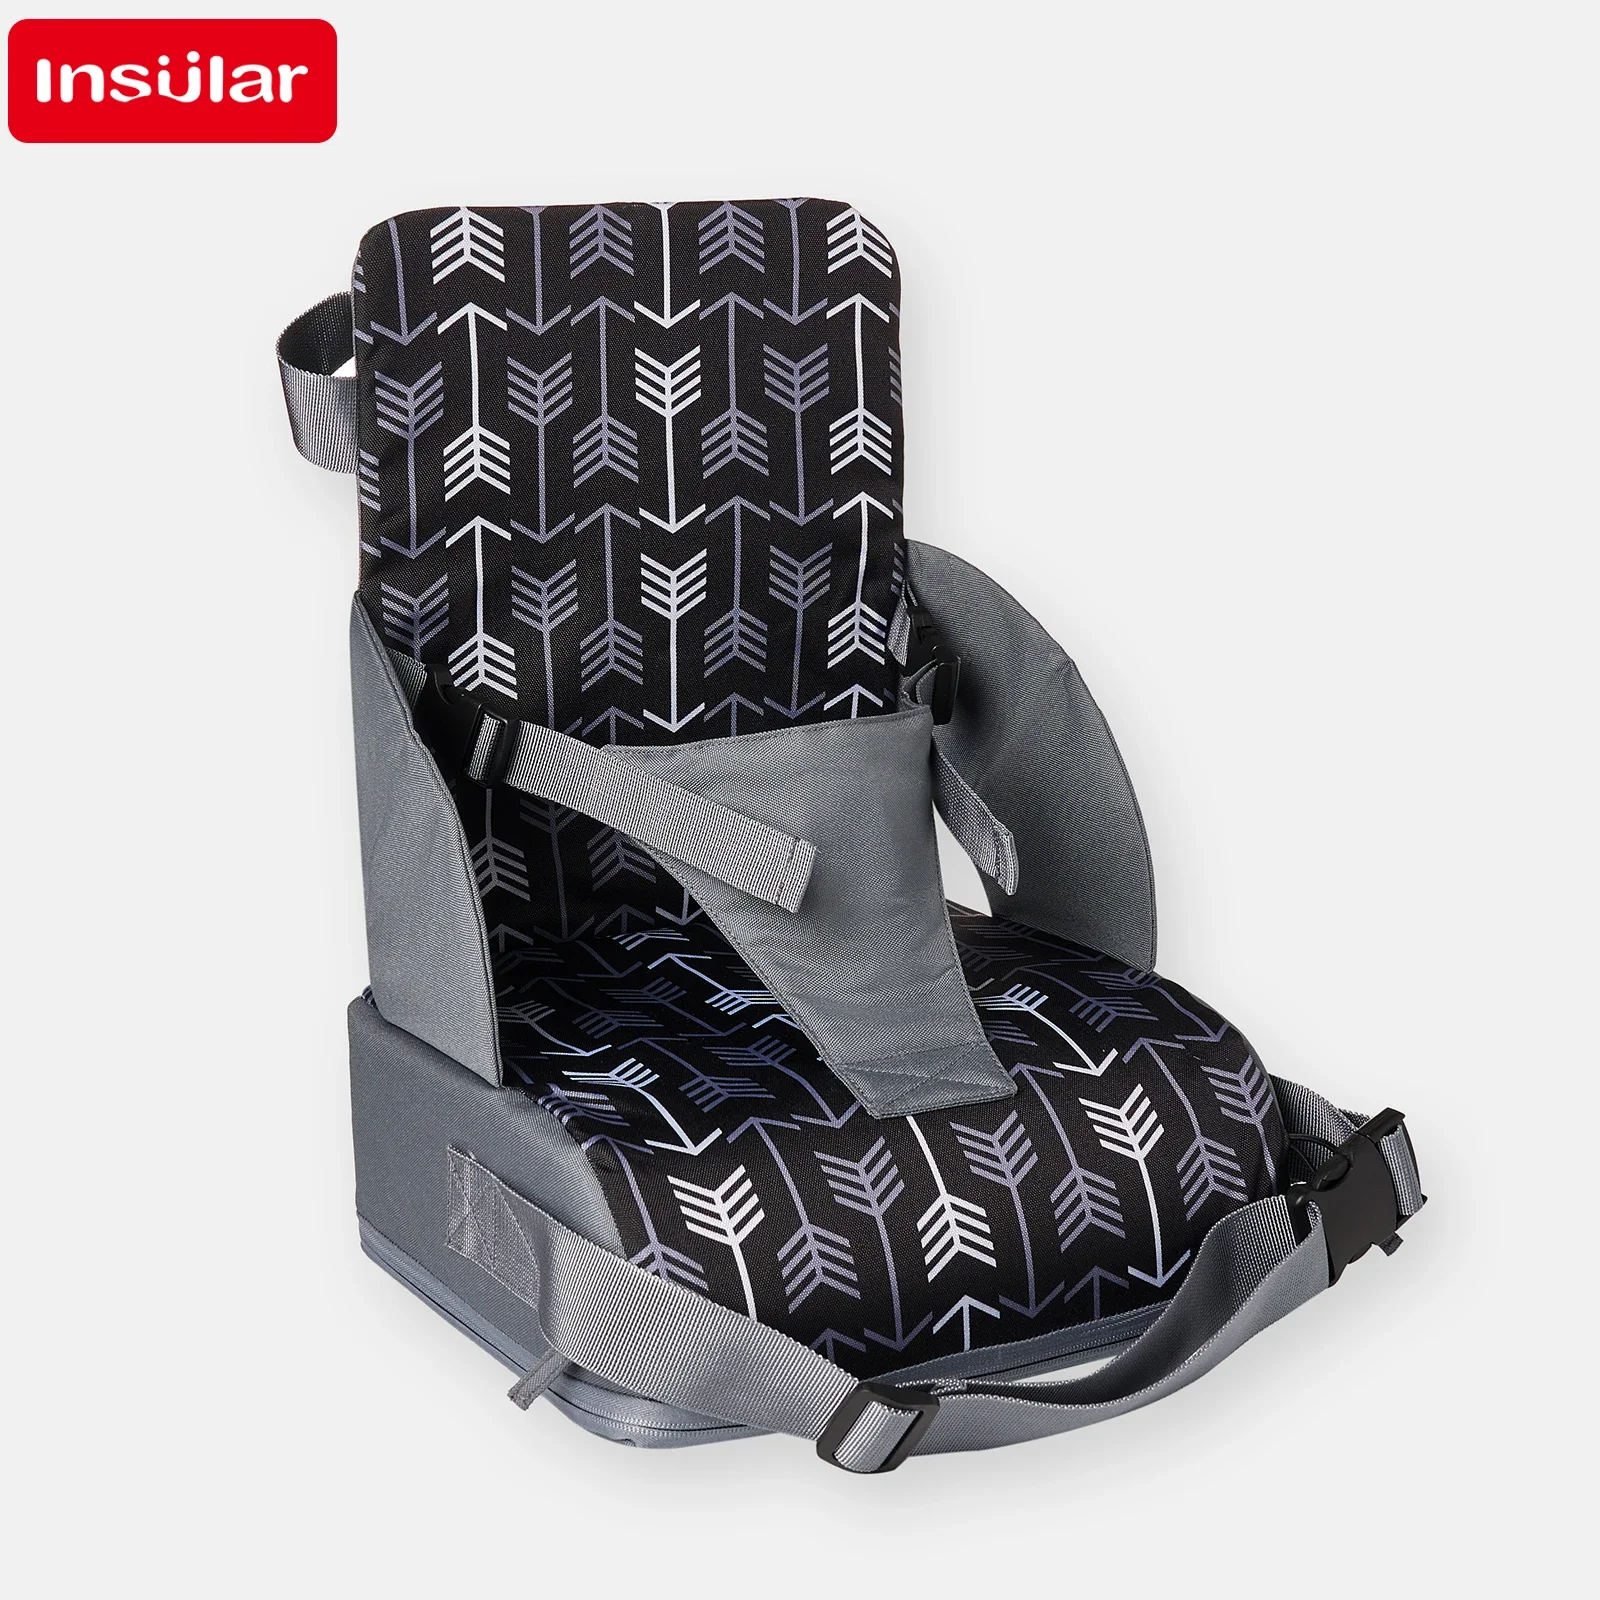 INSULAR-Siège pliable portable pour enfants, coussin haut, chaise de salle à manger pour bébé, fournitures de voyage pour enfants